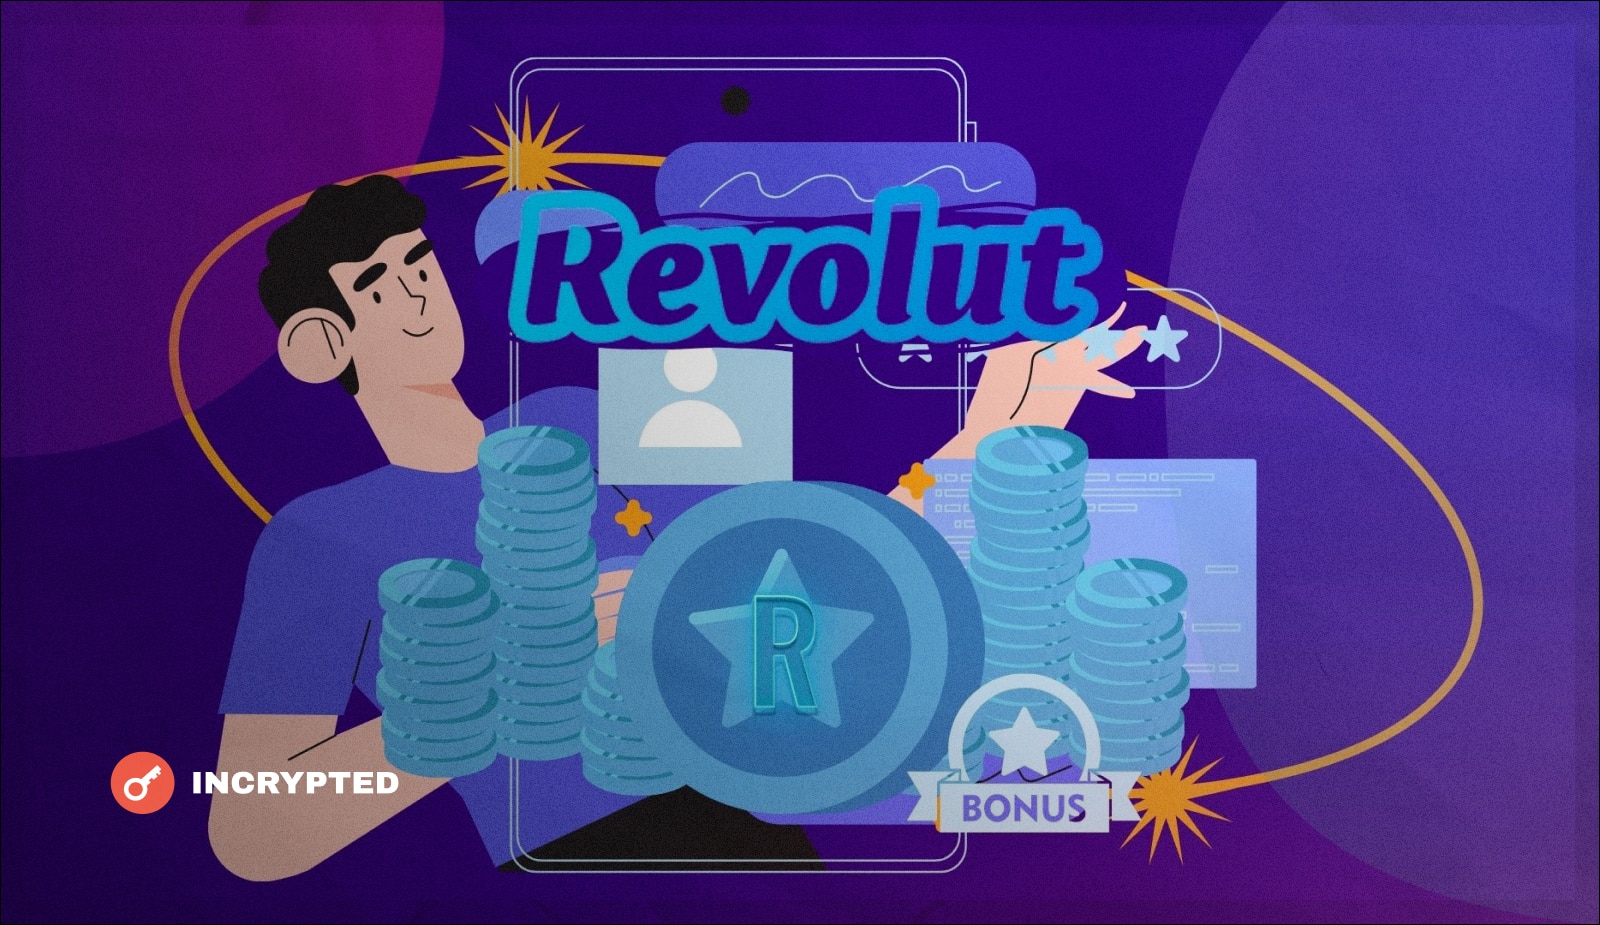 «Revcoin» - Это будет токен лояльности для клиентов приложения. Больше используя приложение Revolut, больше получаешь токенов.